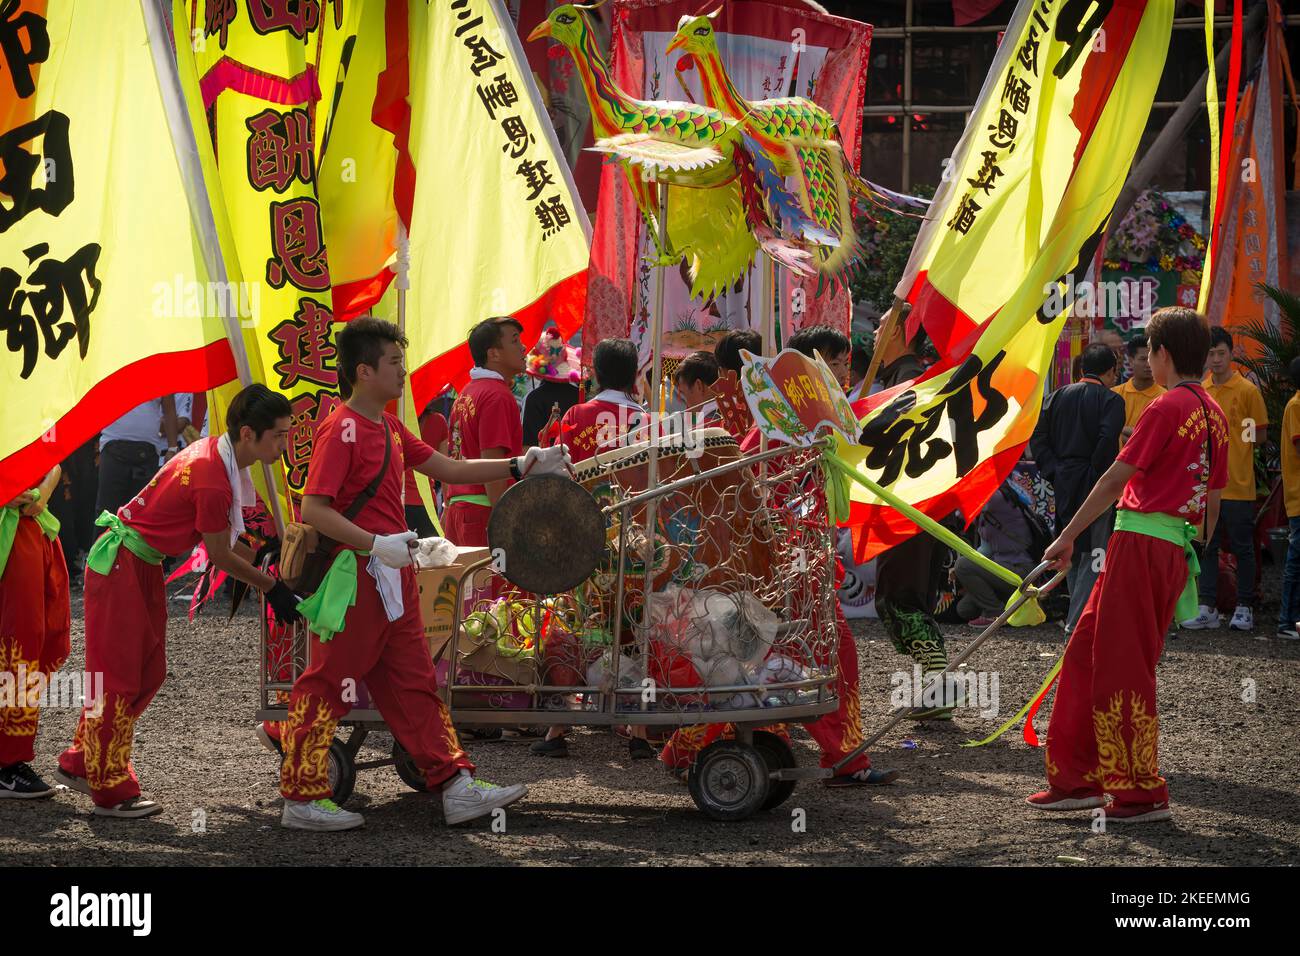 Die Mitglieder des Drachentanzteams ziehen einen Wagen mit einer zeremoniellen Trommel, gong und Wimpern auf dem zehnjährigen Festival Da Jiu, kam Tin, Hongkong, 2015 Stockfoto